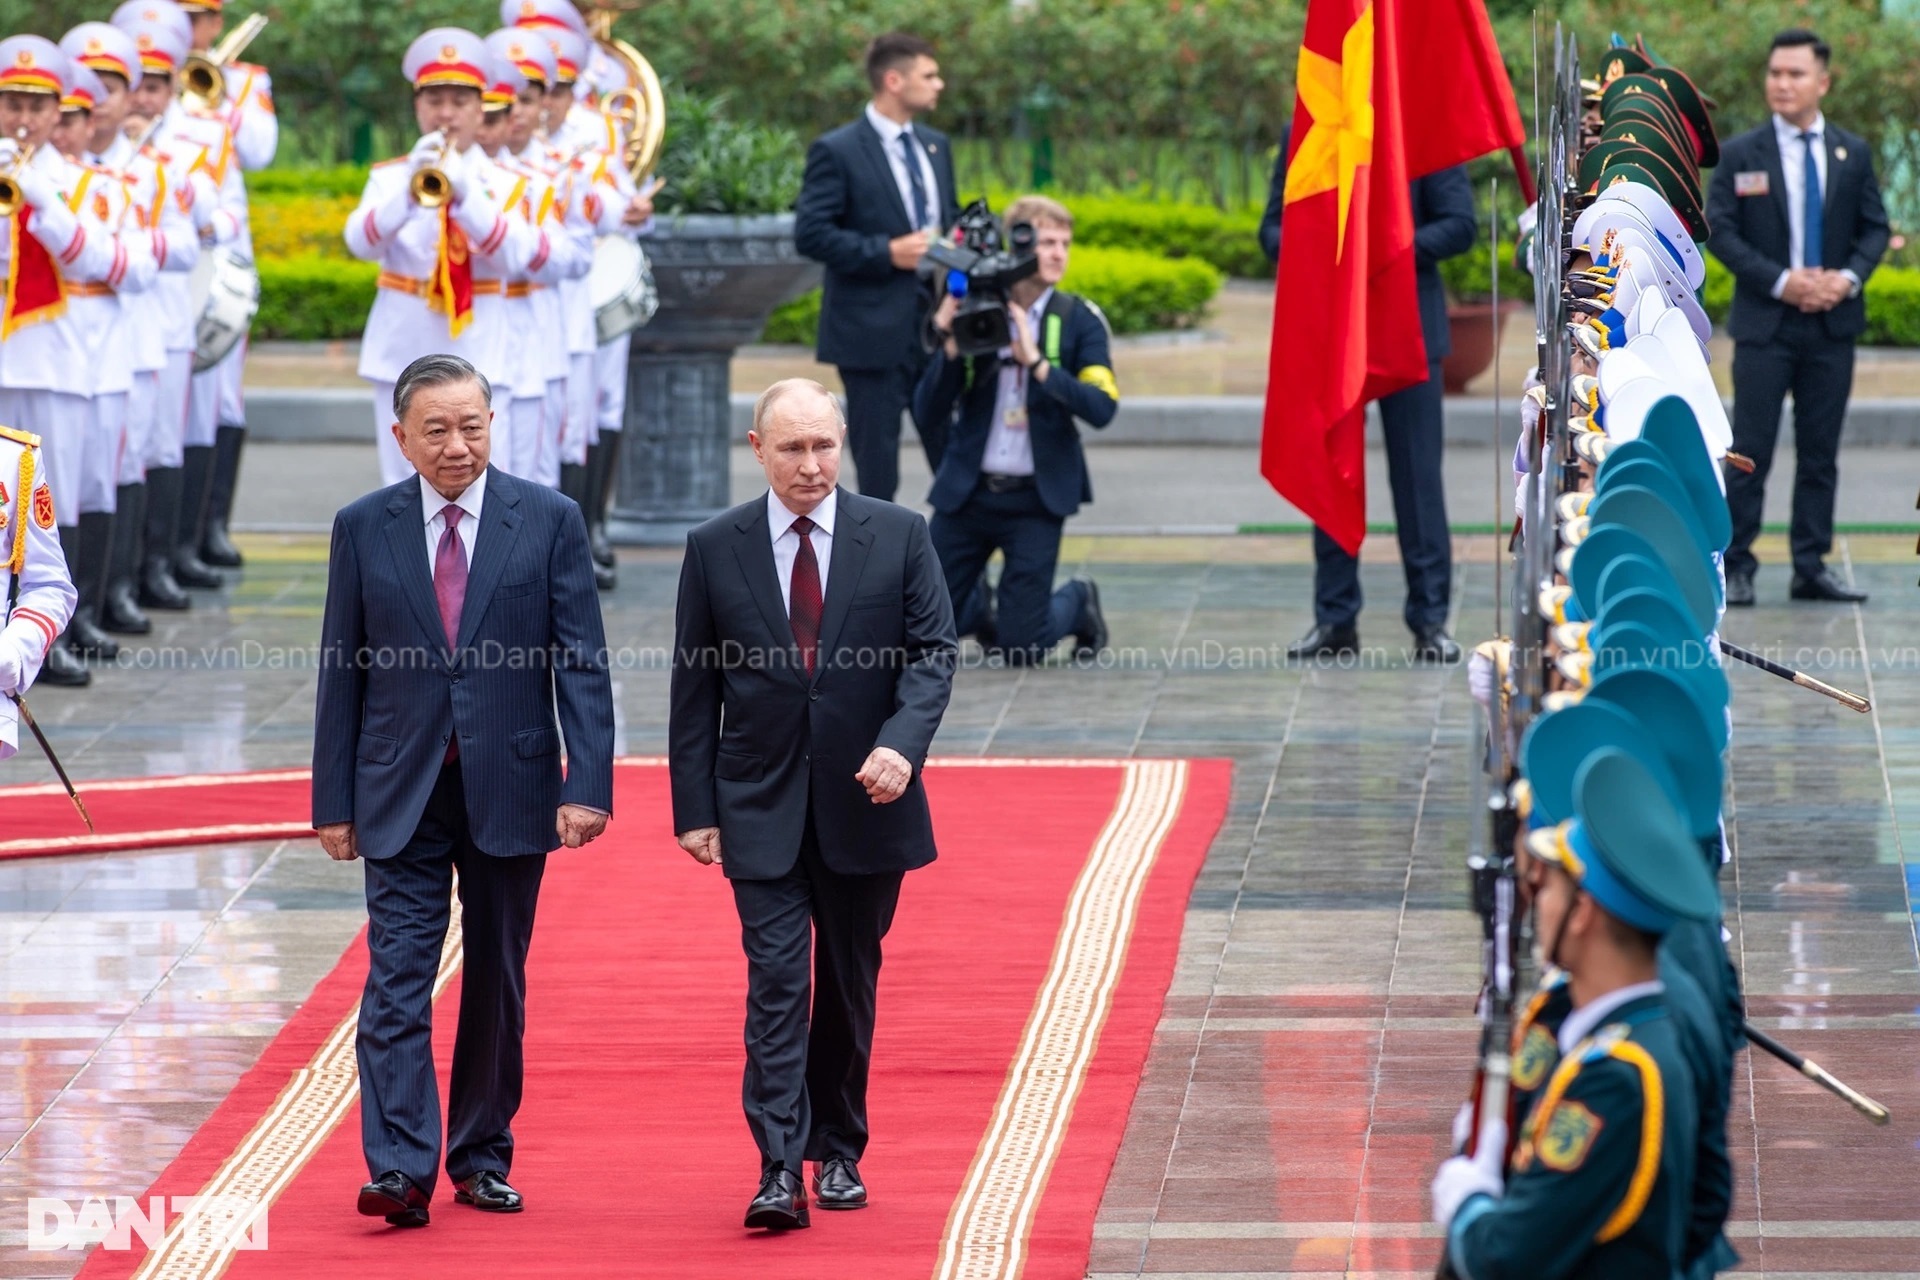 View - Chuyến thăm của Tổng thống Putin tạo xung lực mới cho hợp tác Việt - Nga | Báo Dân trí